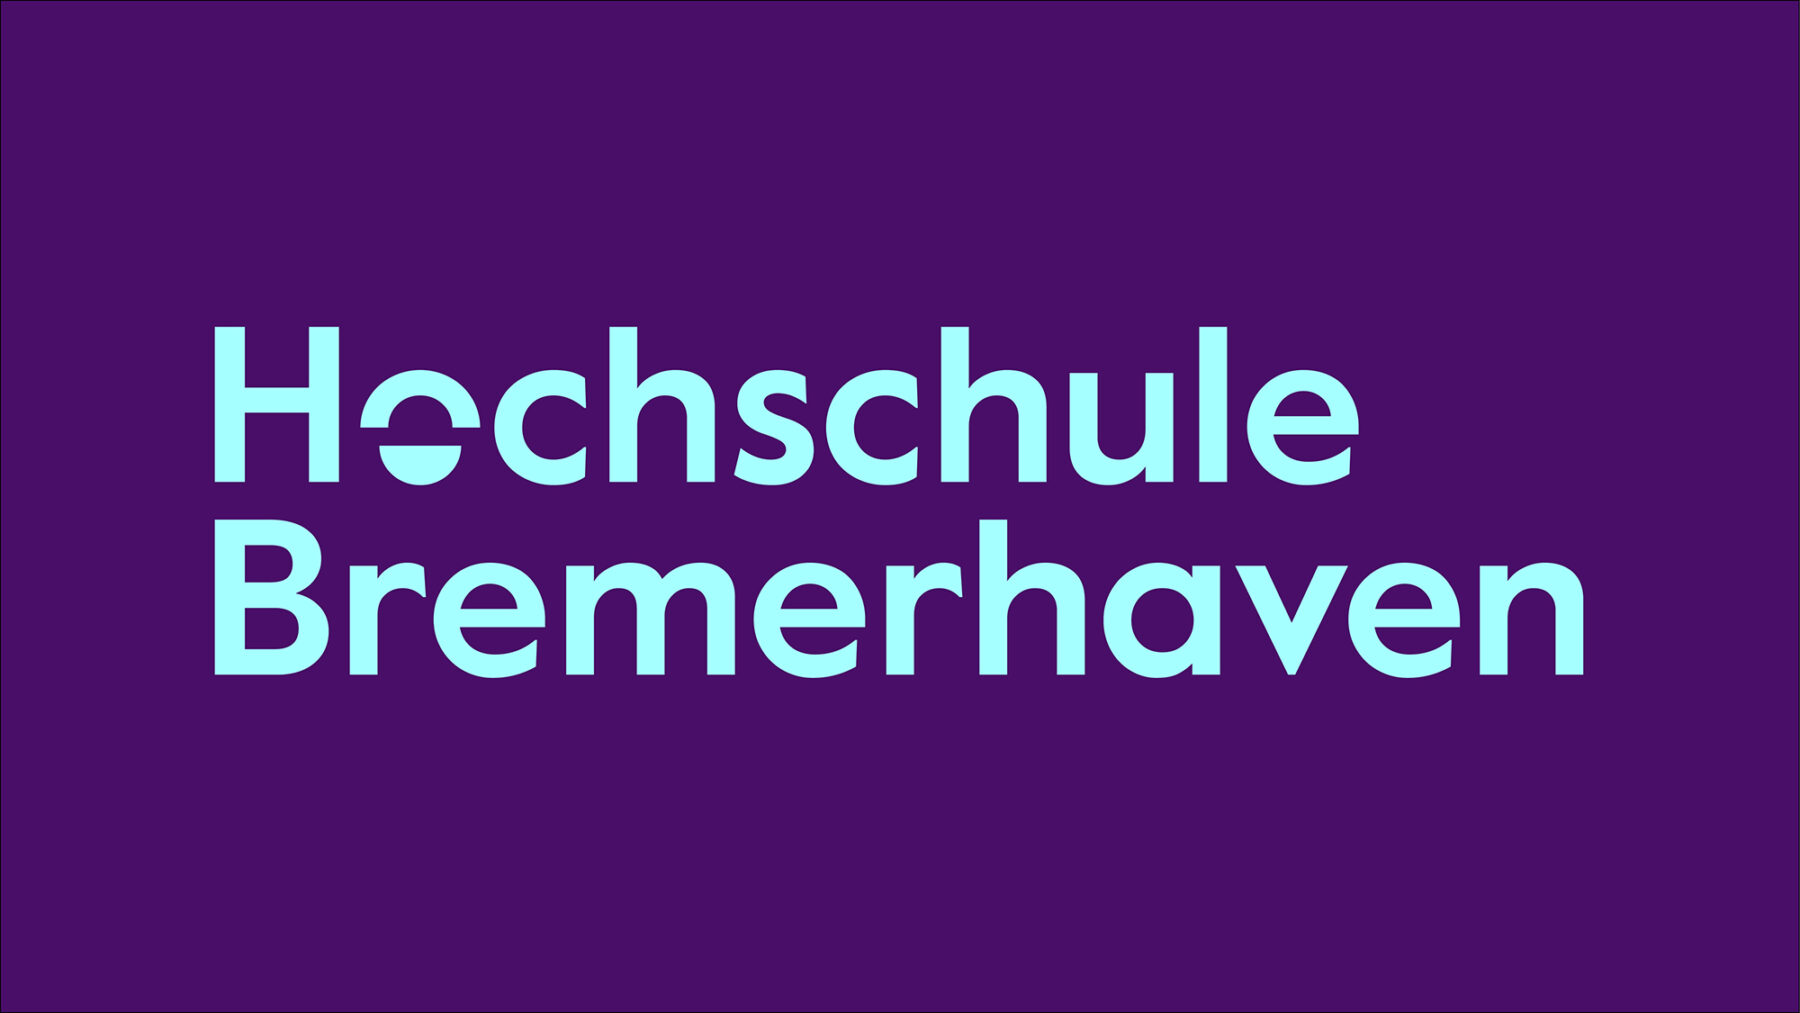 Hochschule Bremerhaven (3)